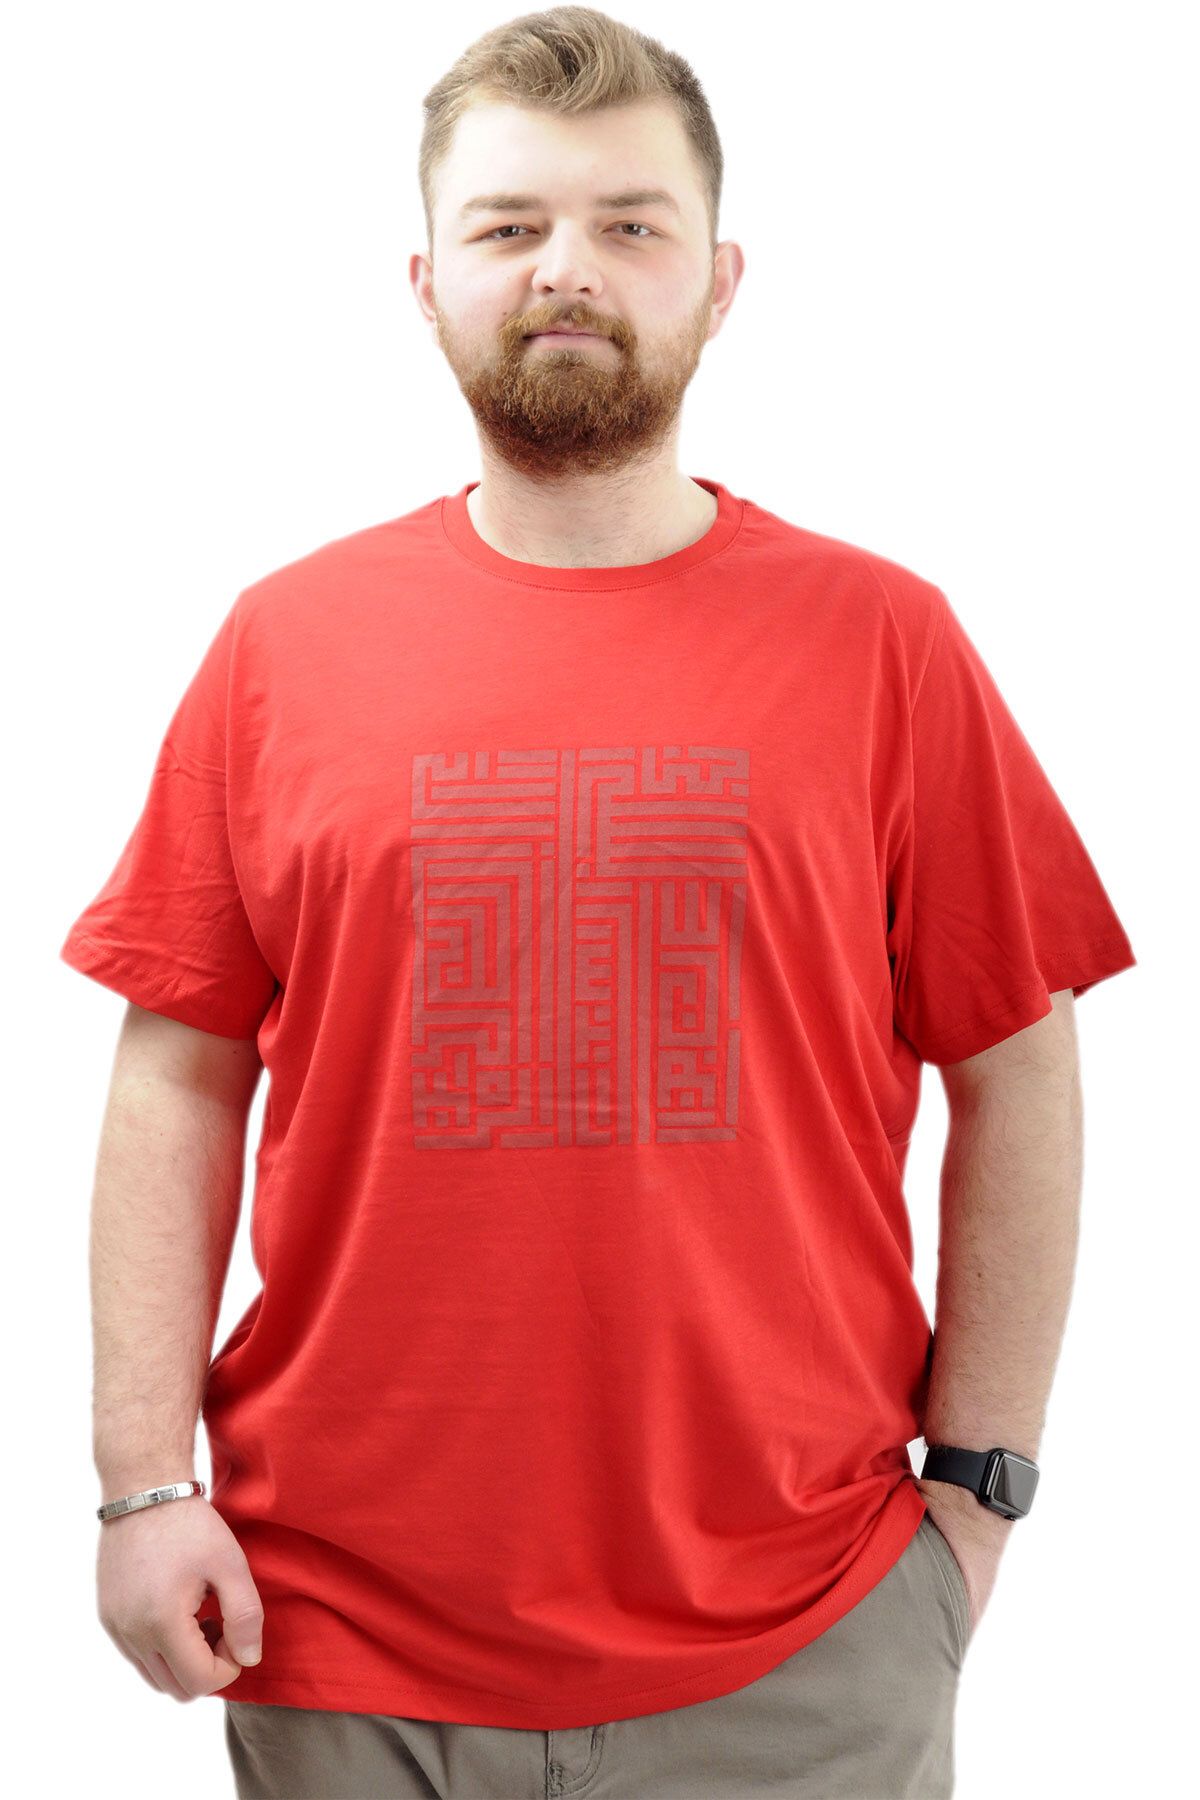 Modexl Mode XL Büyük Beden Erkek T-Shirt Bisiklet Yaka Baskılı LABYRINTH U24048 Kırmızı